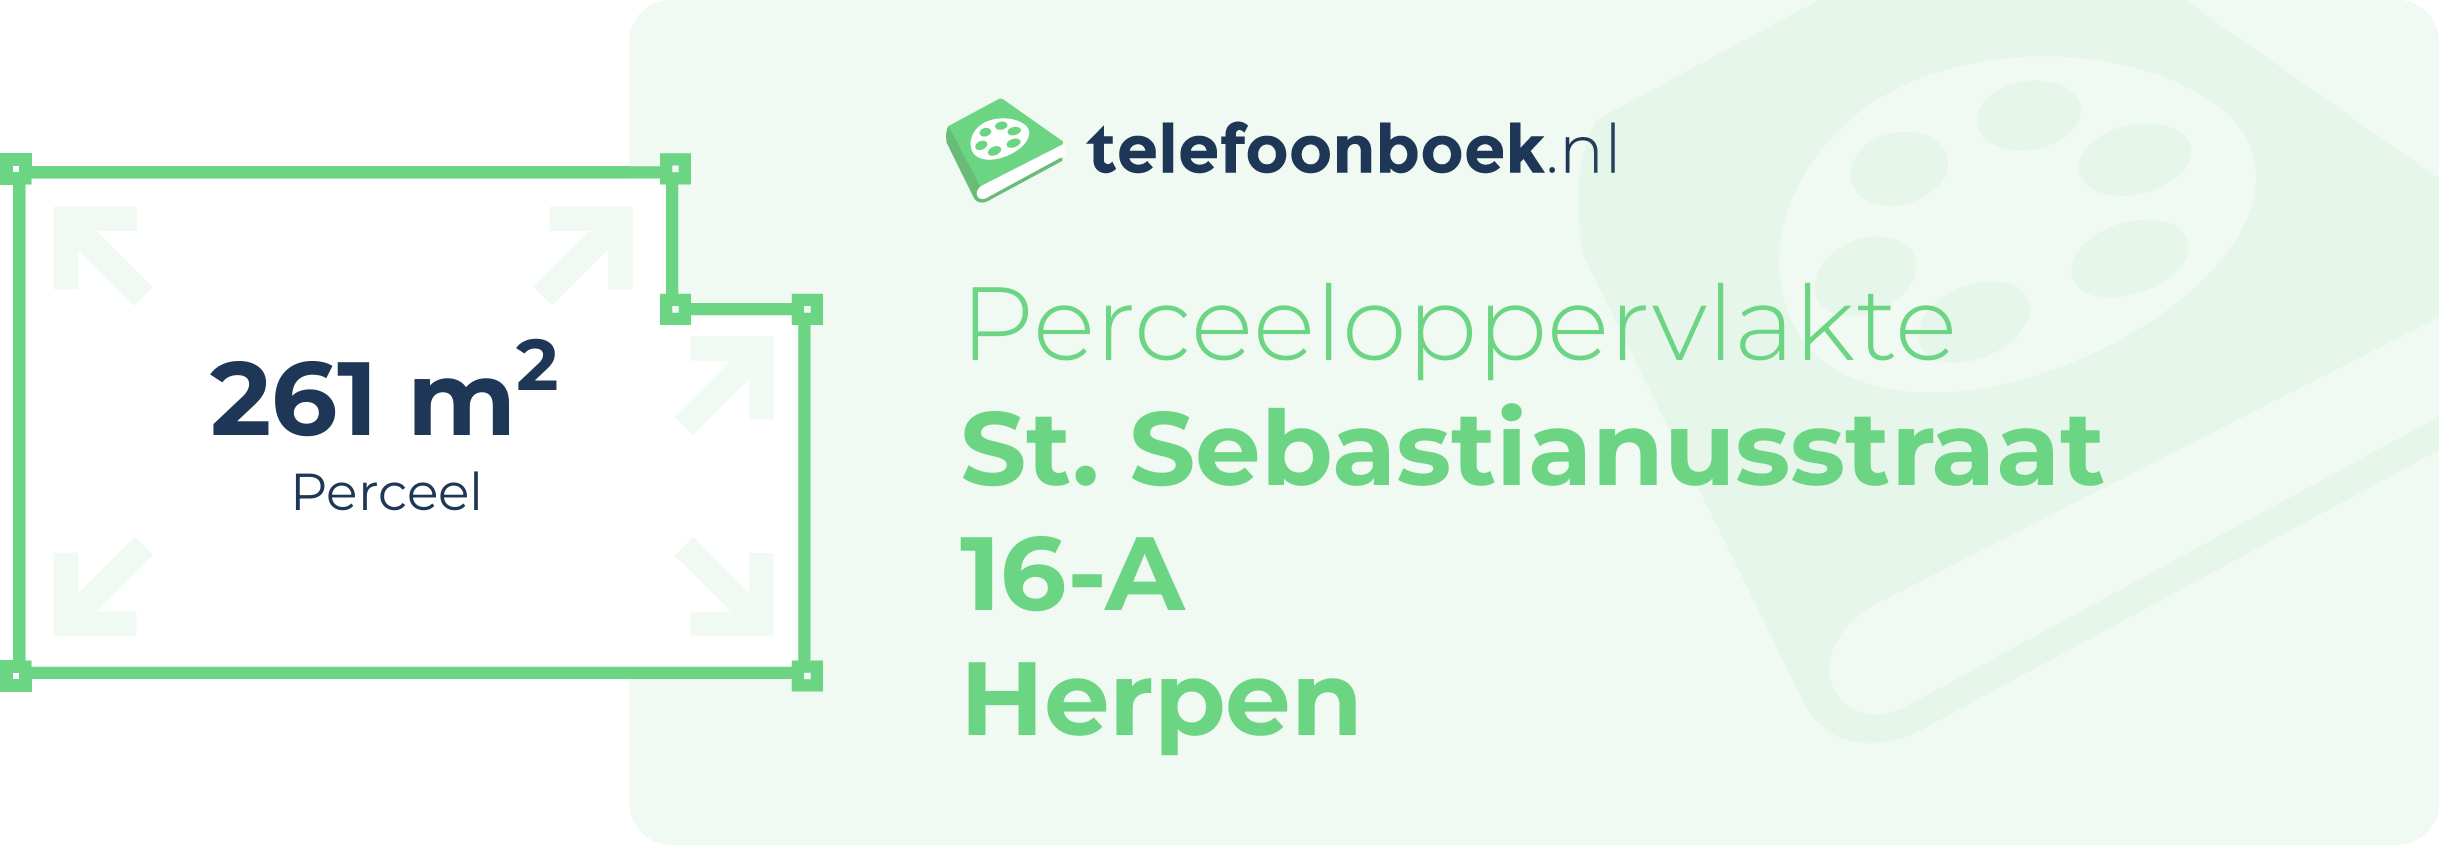 Perceeloppervlakte St. Sebastianusstraat 16-A Herpen